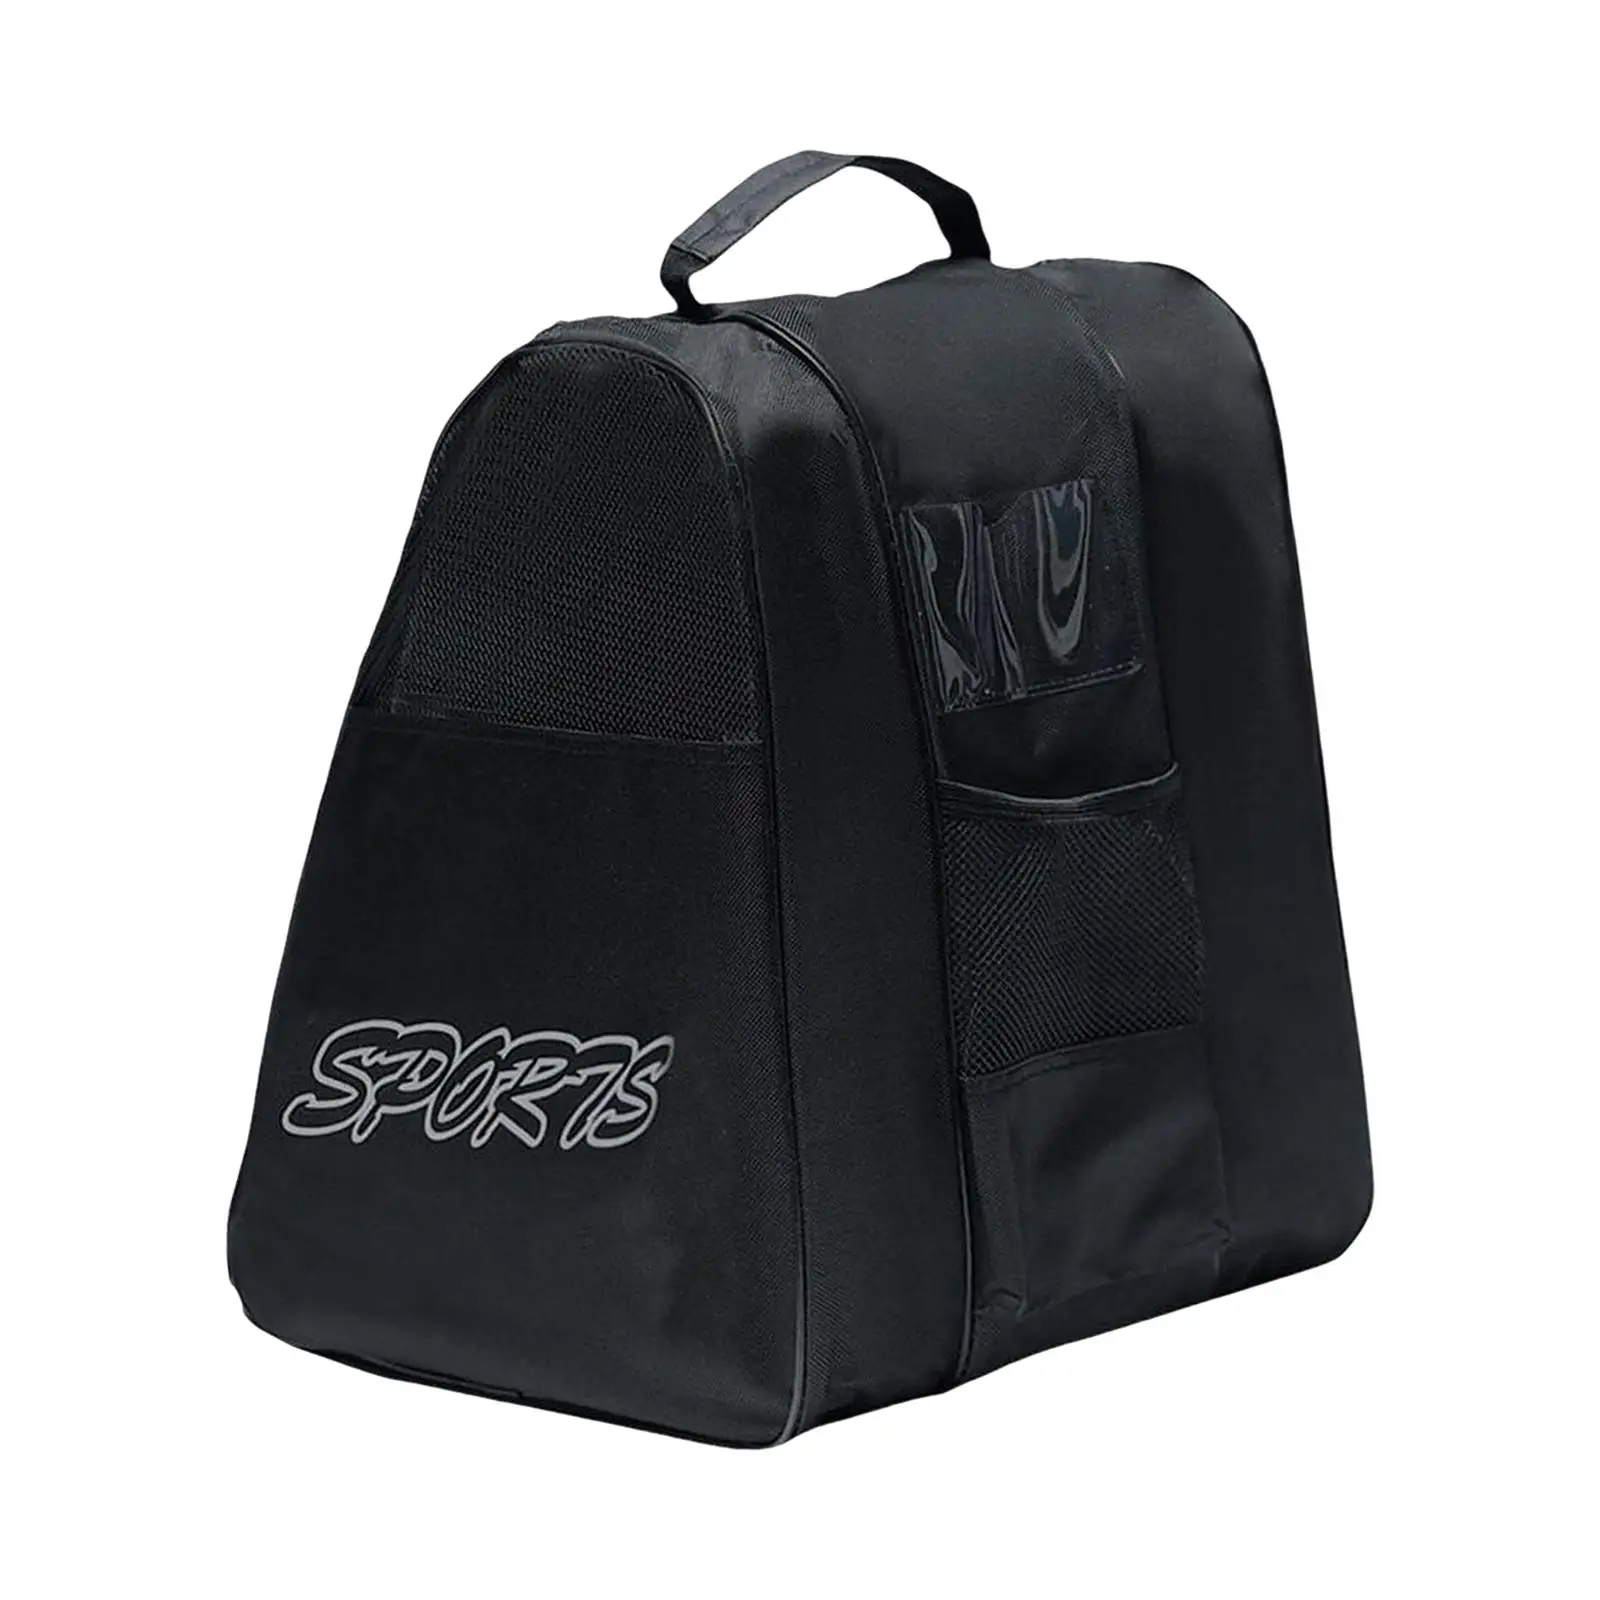 Roller Skate Bag Large Capacity Adjustable Shoulder Strap Lightweight Skating Shoes Carrying Bag for Quad Skates Figure Skates